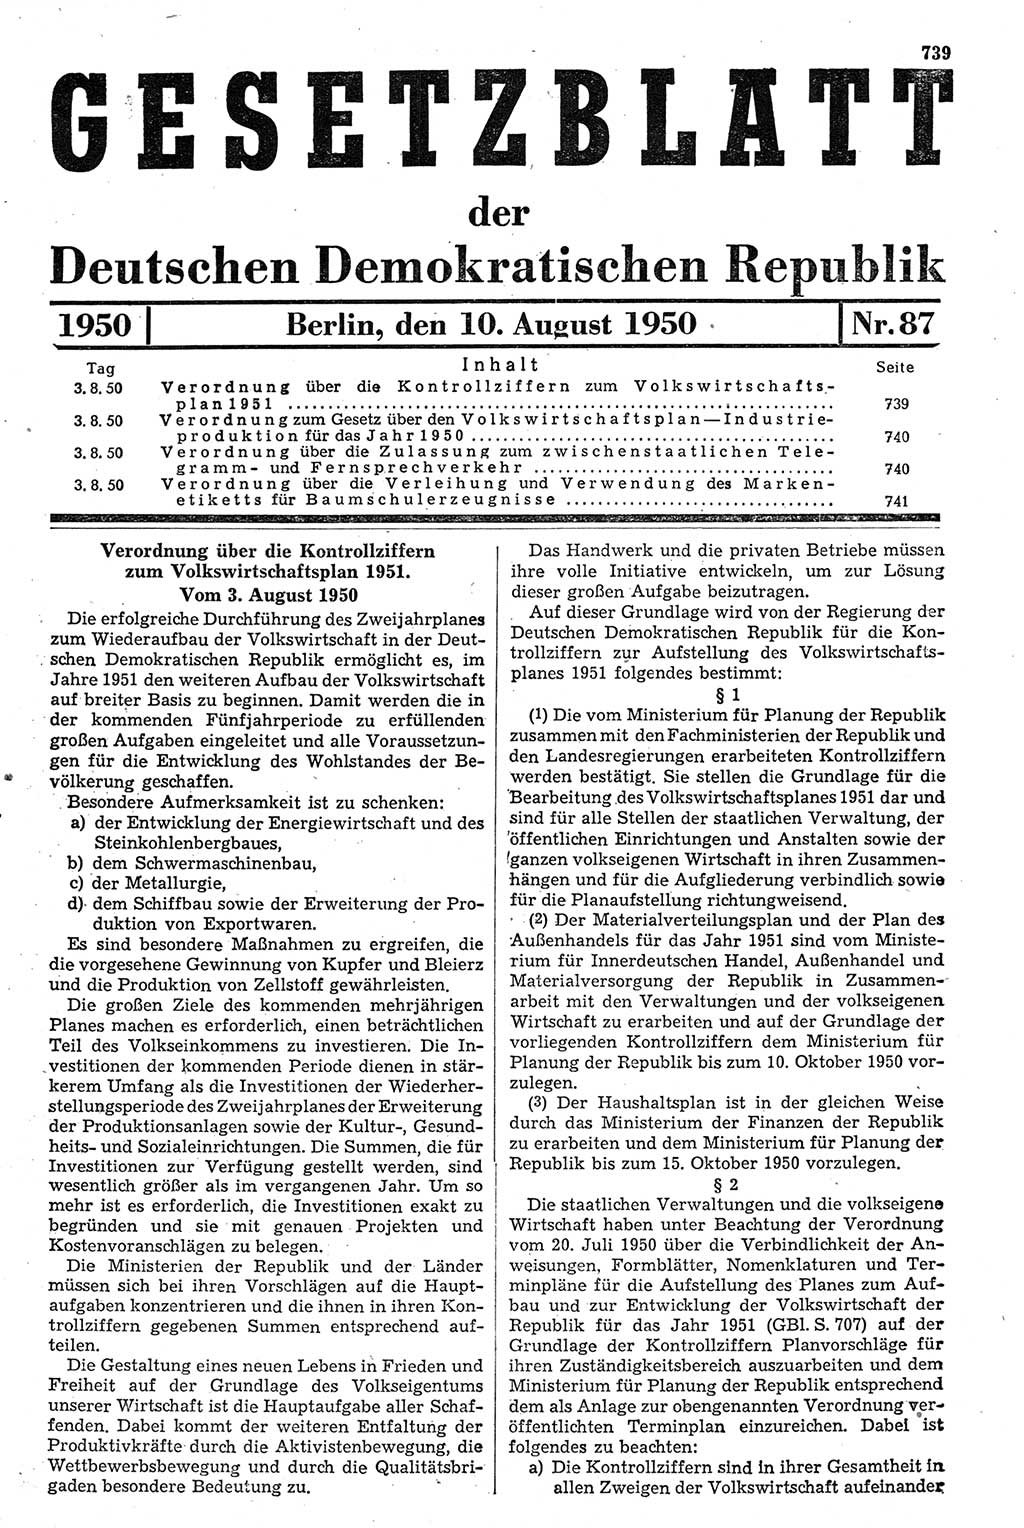 Gesetzblatt (GBl.) der Deutschen Demokratischen Republik (DDR) 1950, Seite 739 (GBl. DDR 1950, S. 739)